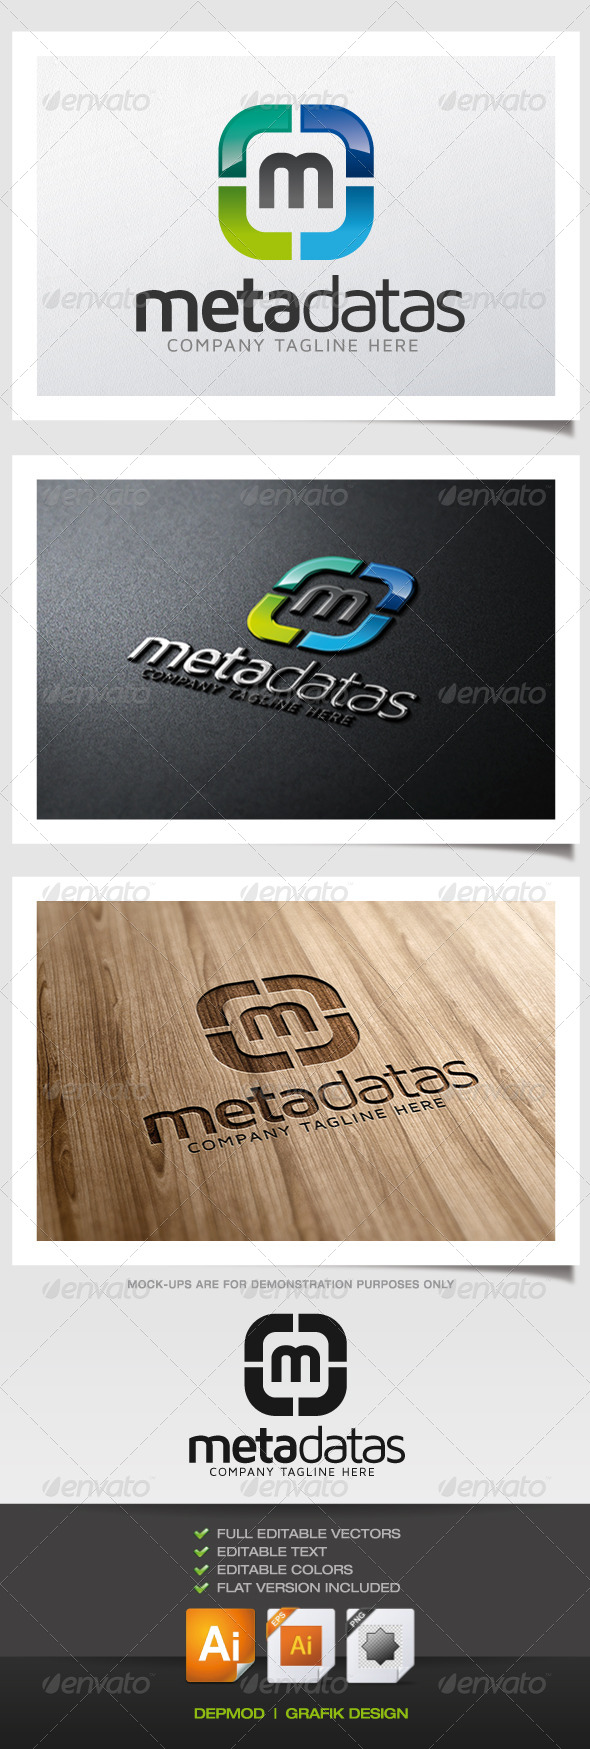 Meta Datas Logo